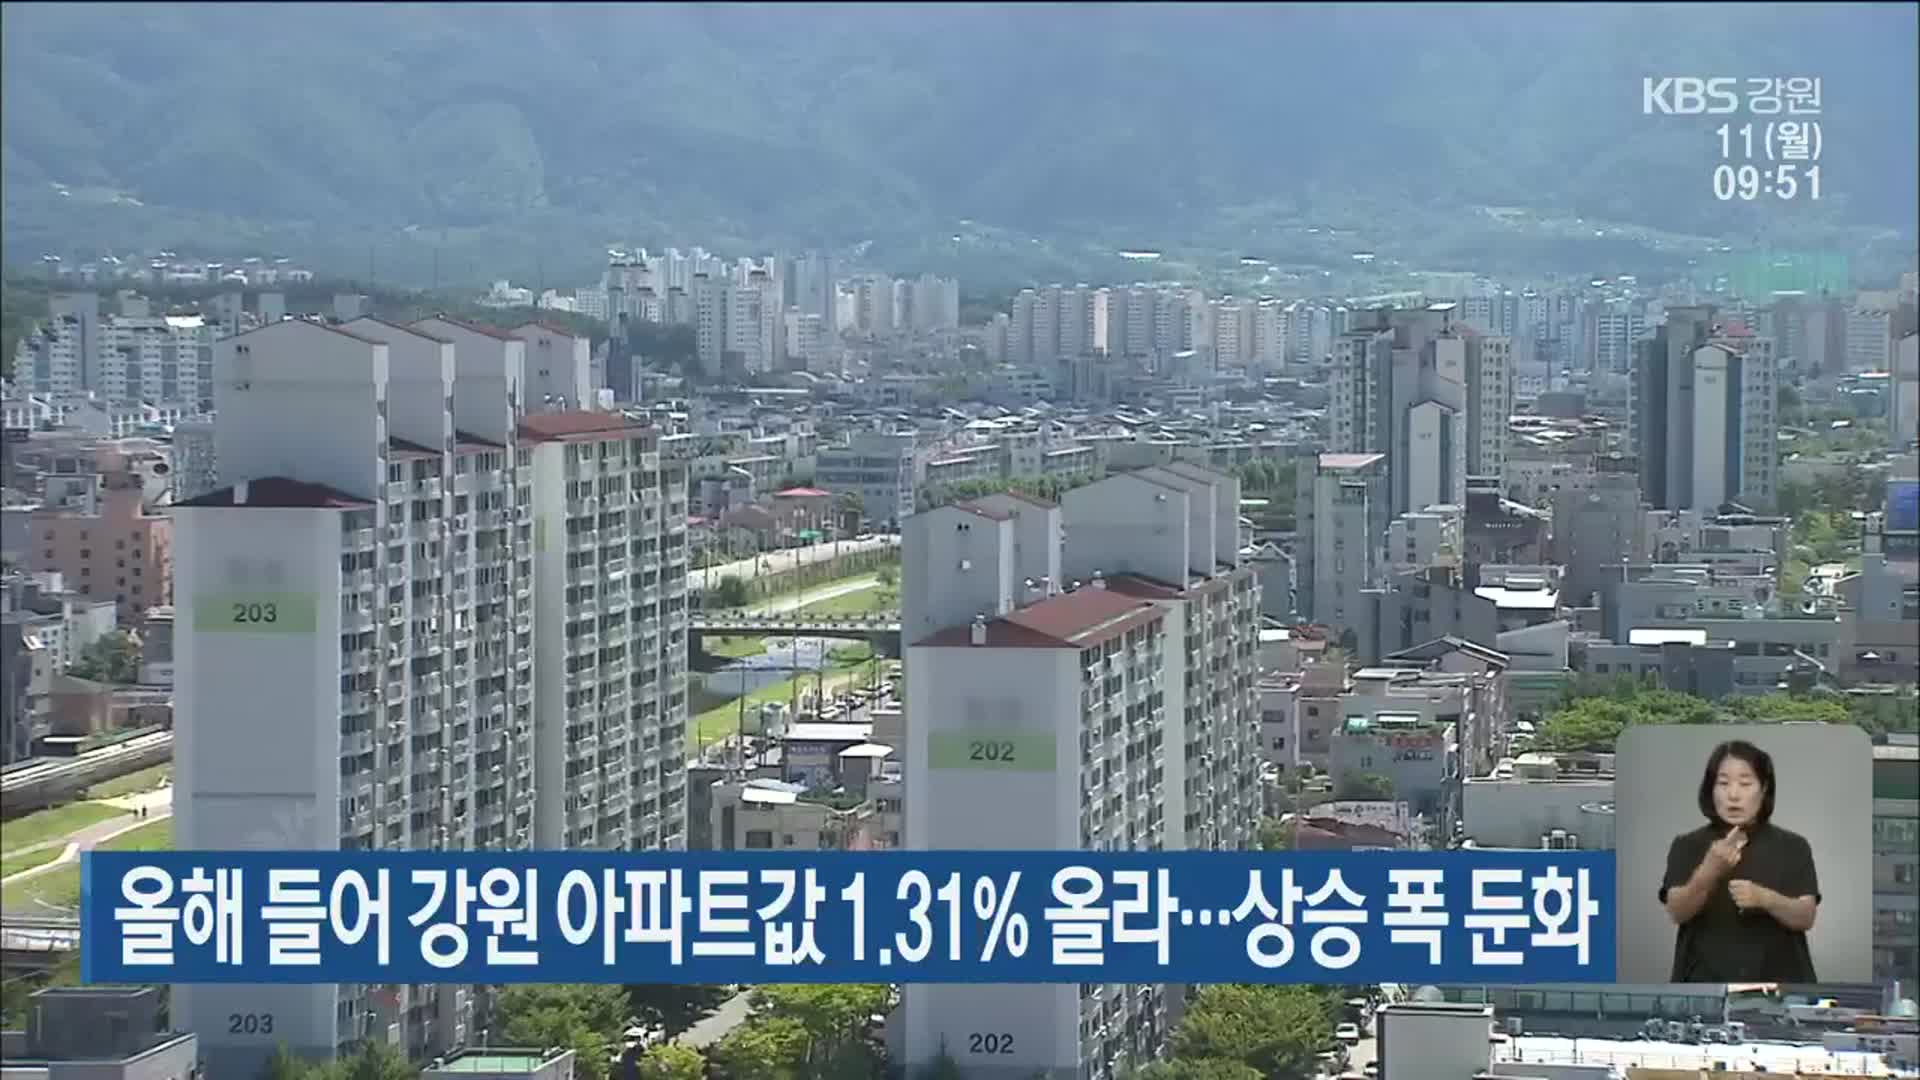 올해 들어 강원 아파트값 1.31% 올라…상승 폭 둔화